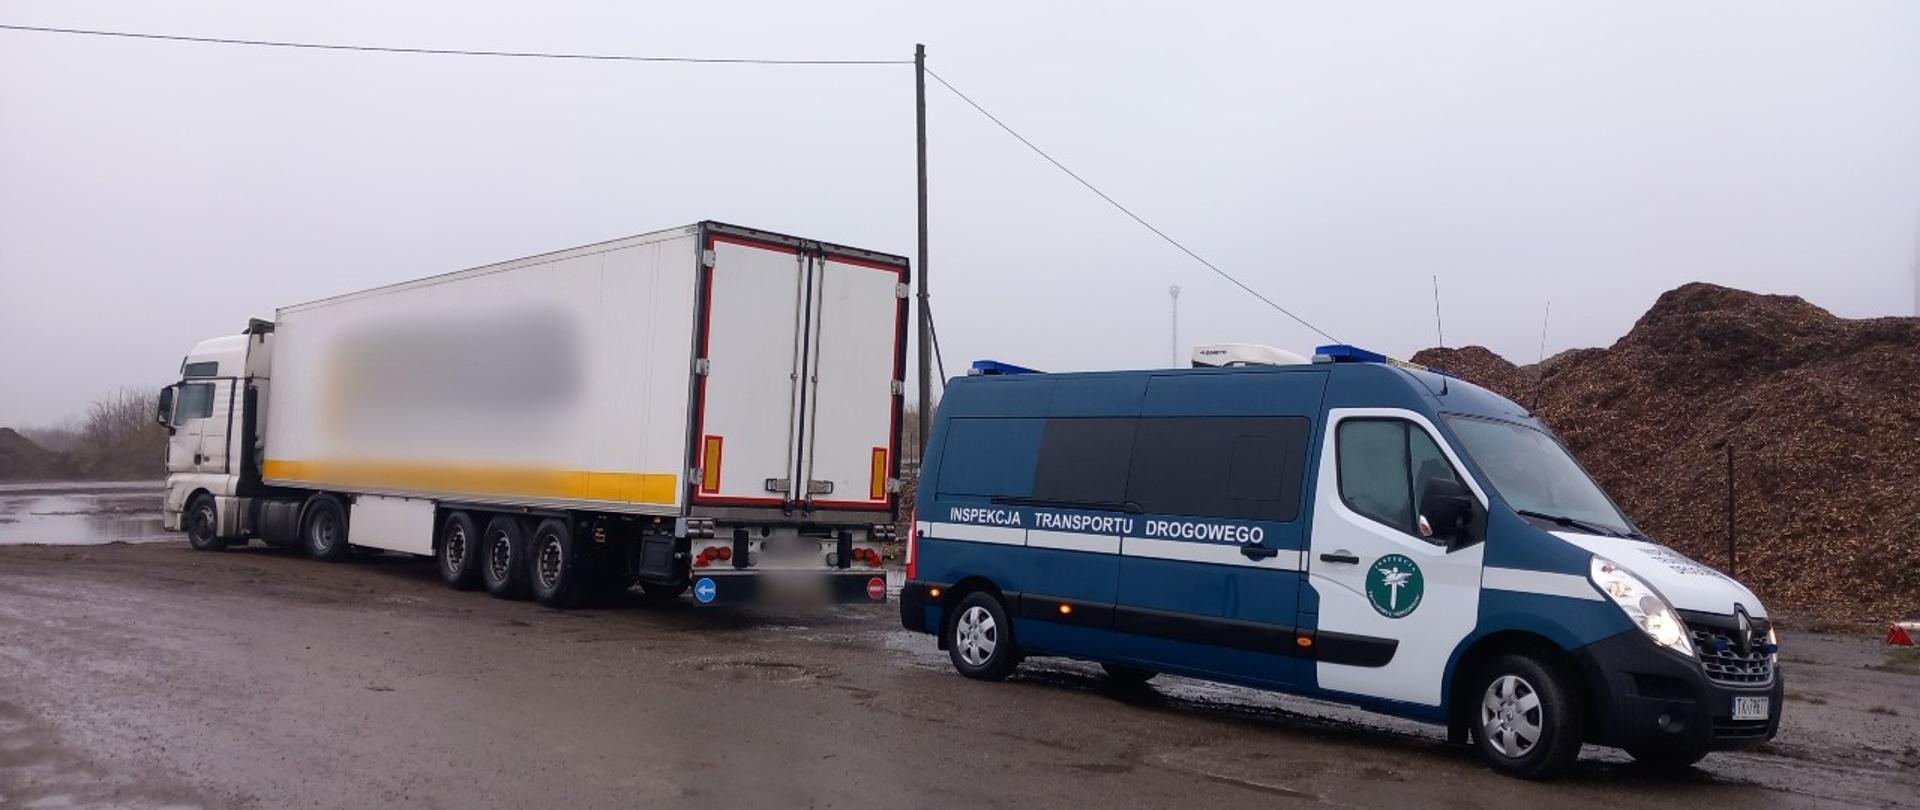 Od lewej: ciągnik siodłowy z podpiętą naczepą i oznakowany furgon świętokrzyskiej Inspekcji Transportu Drogowego.